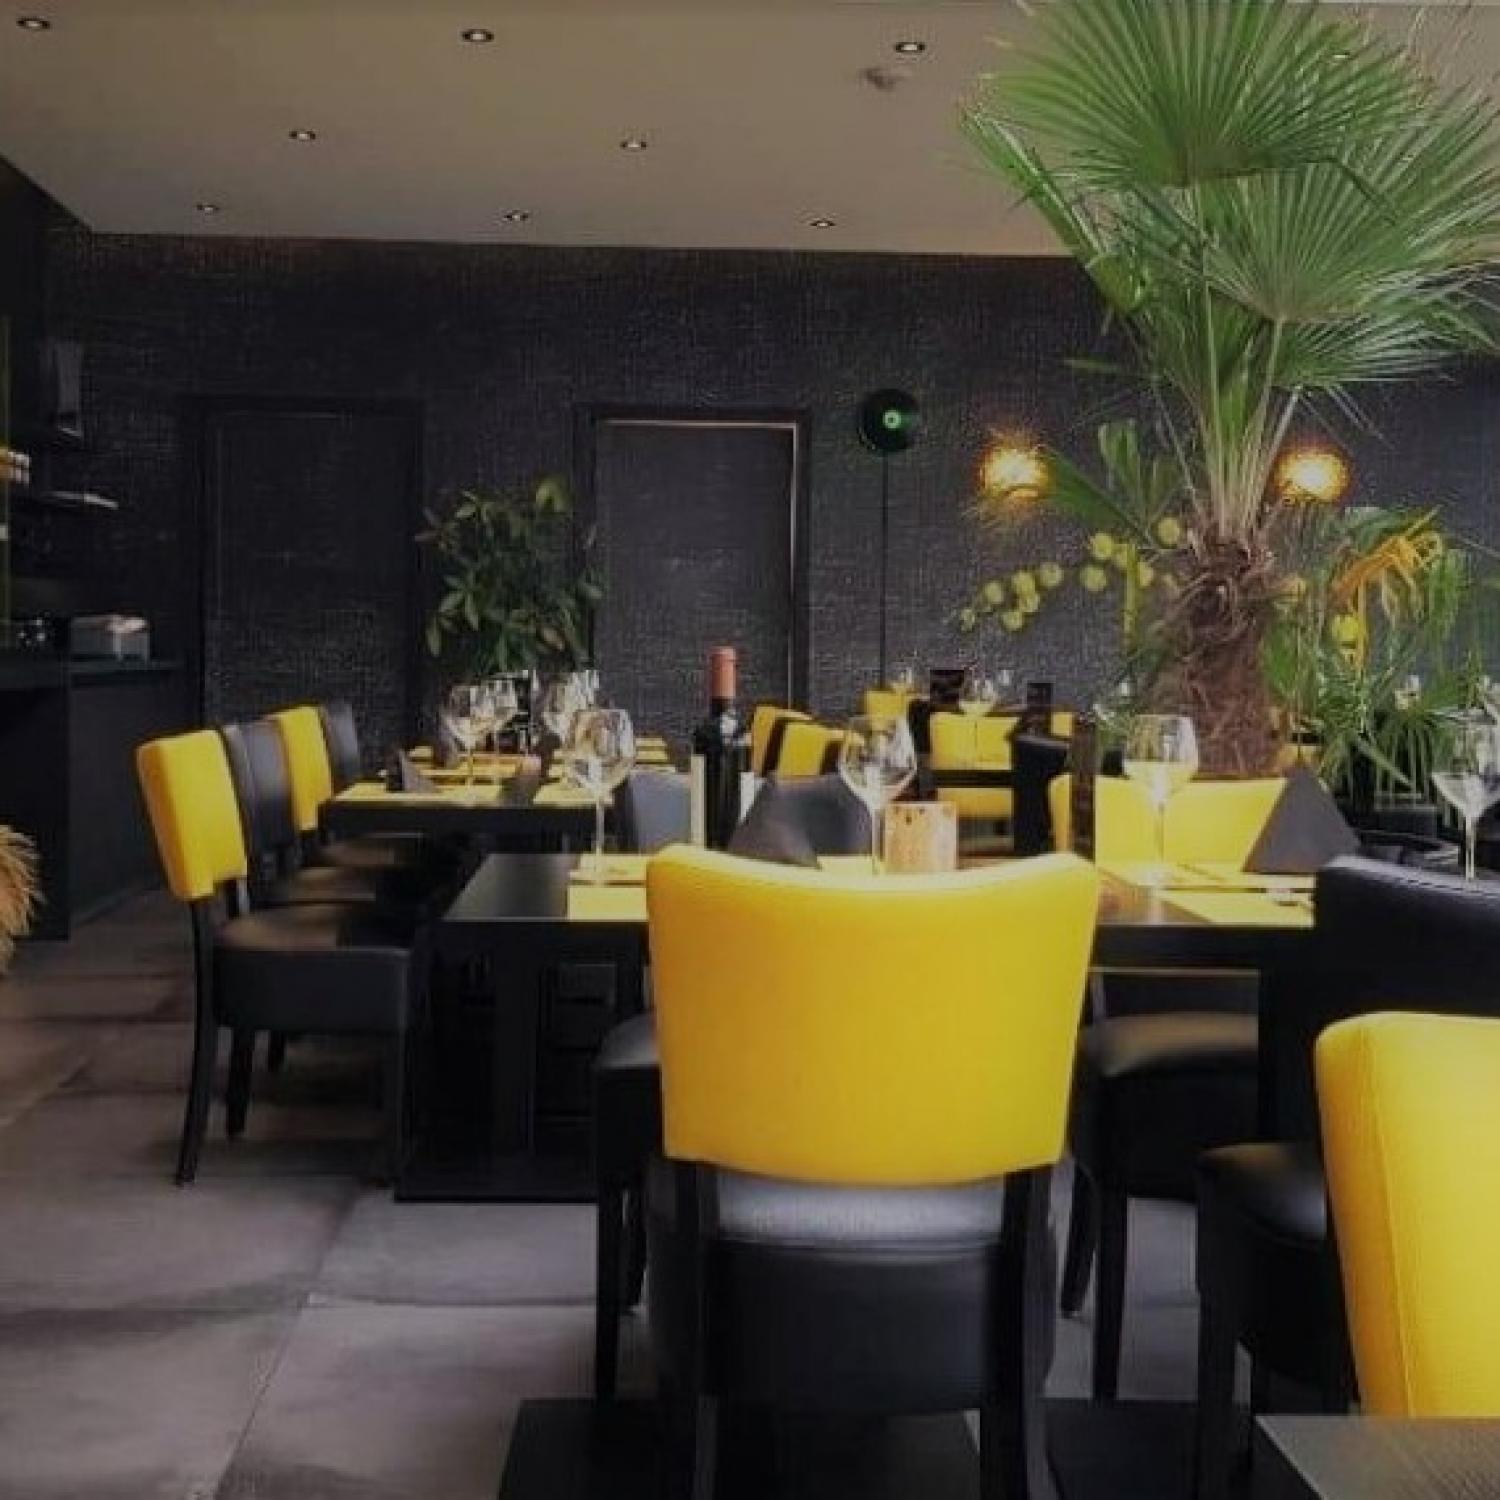 Les Mimosas - restaurant / pizzeria / tea-room - Hingeon Namur 